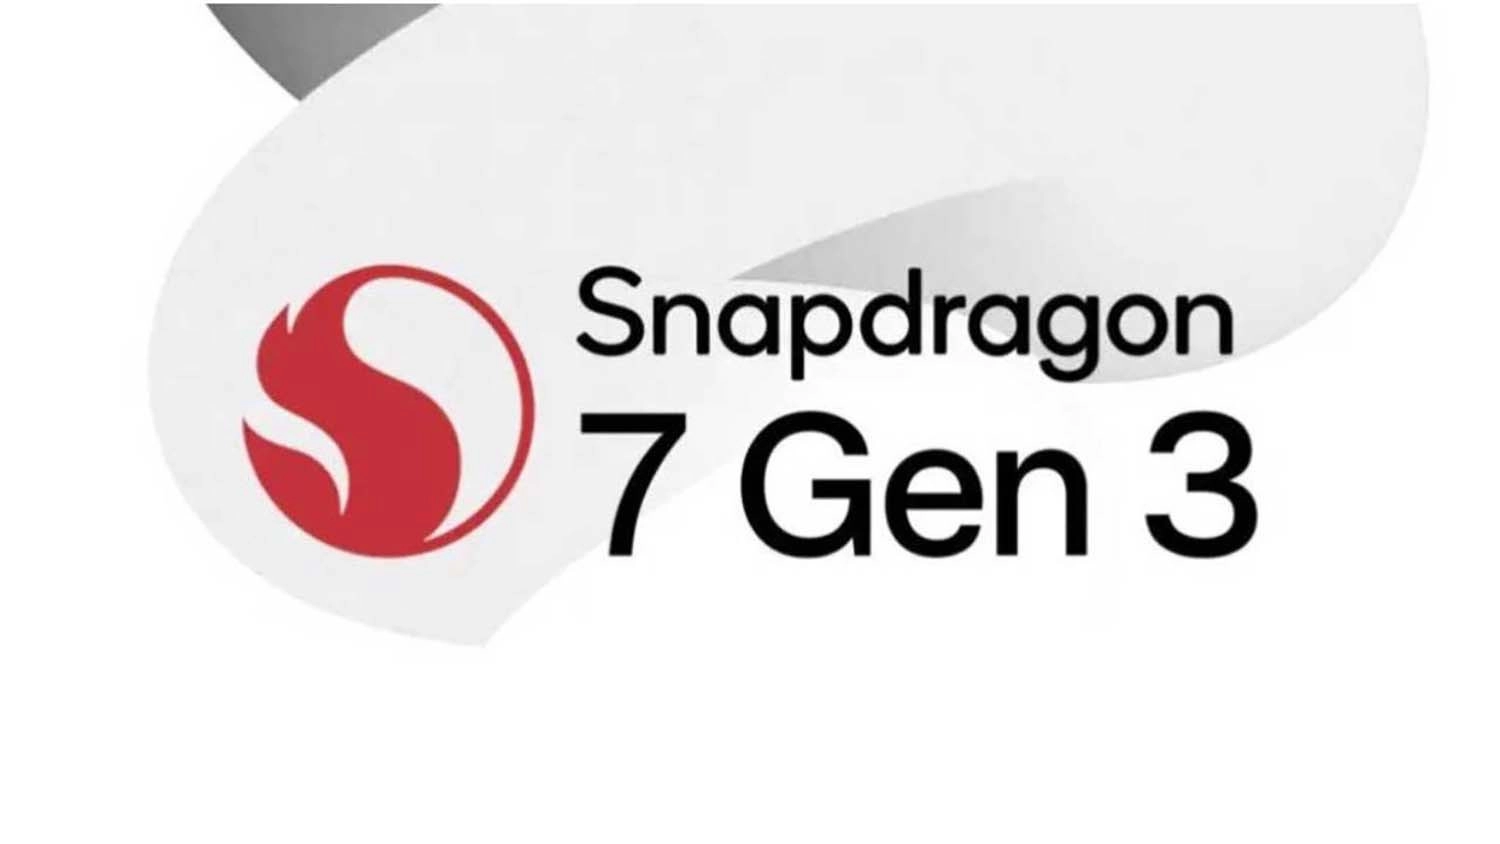 Snapdragon 7 Gen 3 được trang bị lên của các mẫu điện thoại của Vivo và Honor